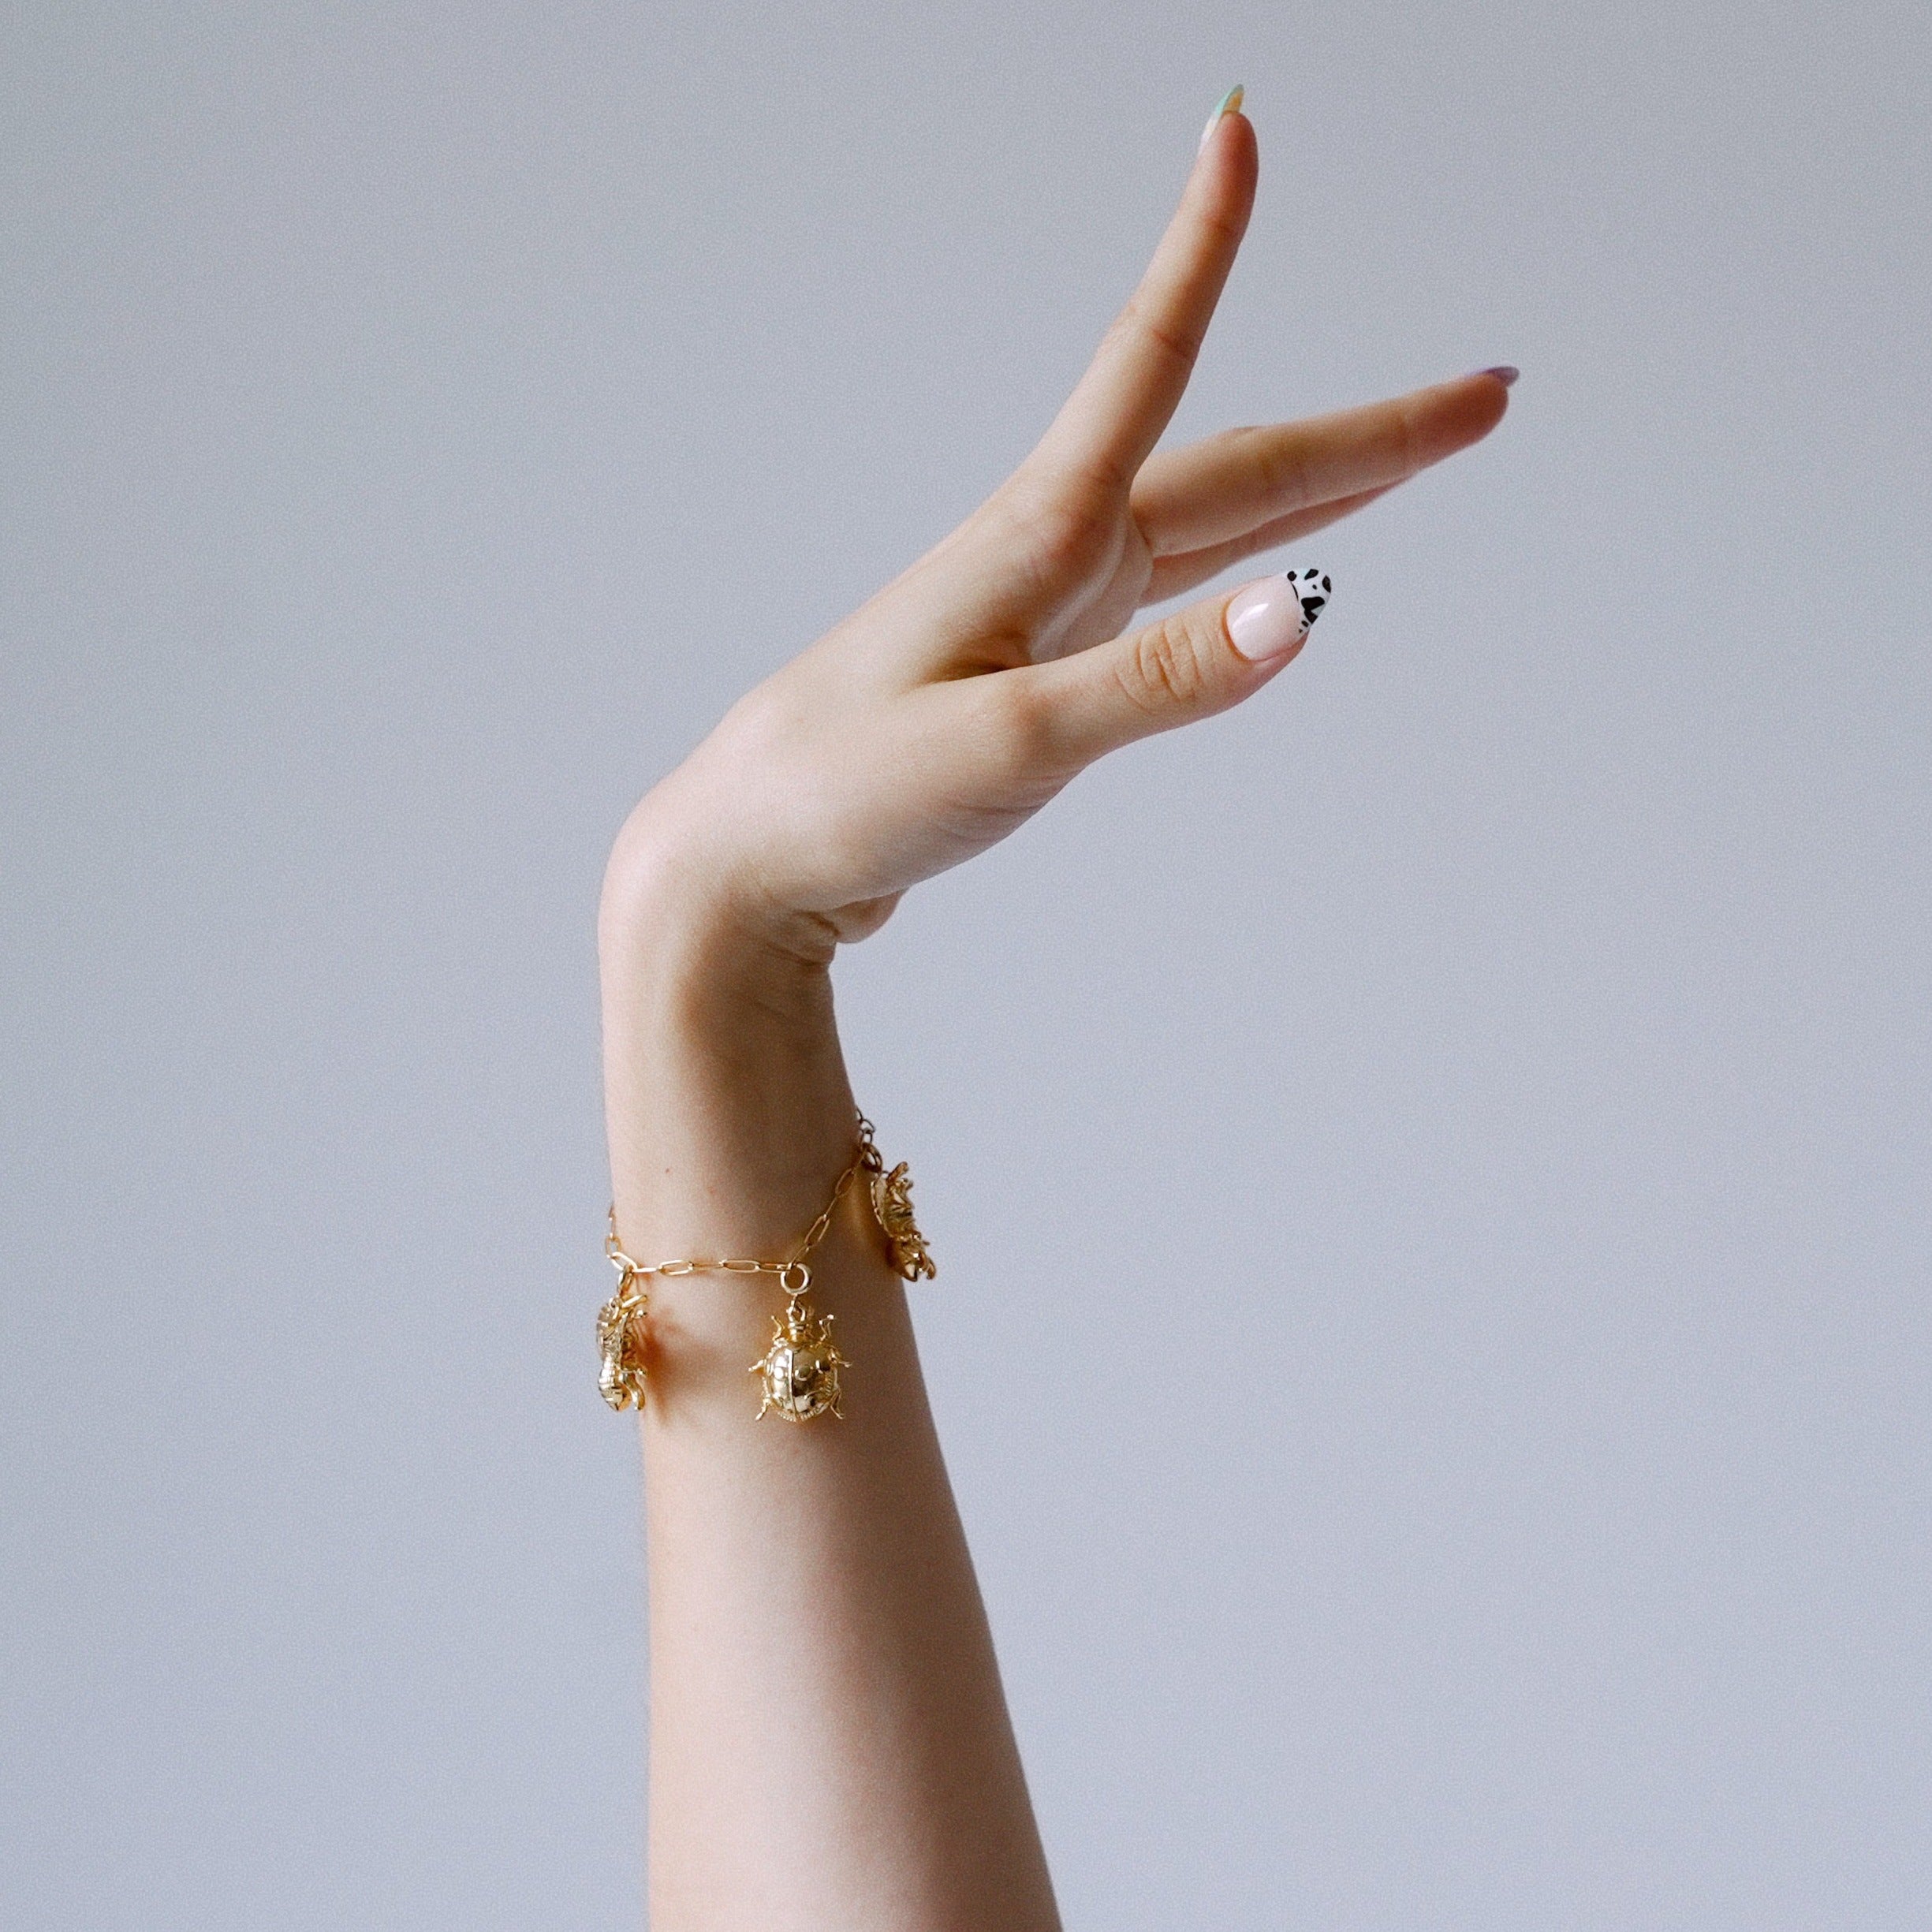 Buy Stunning Gold One Gram Gold Heart Design Hand Chain Bracelet for Girls